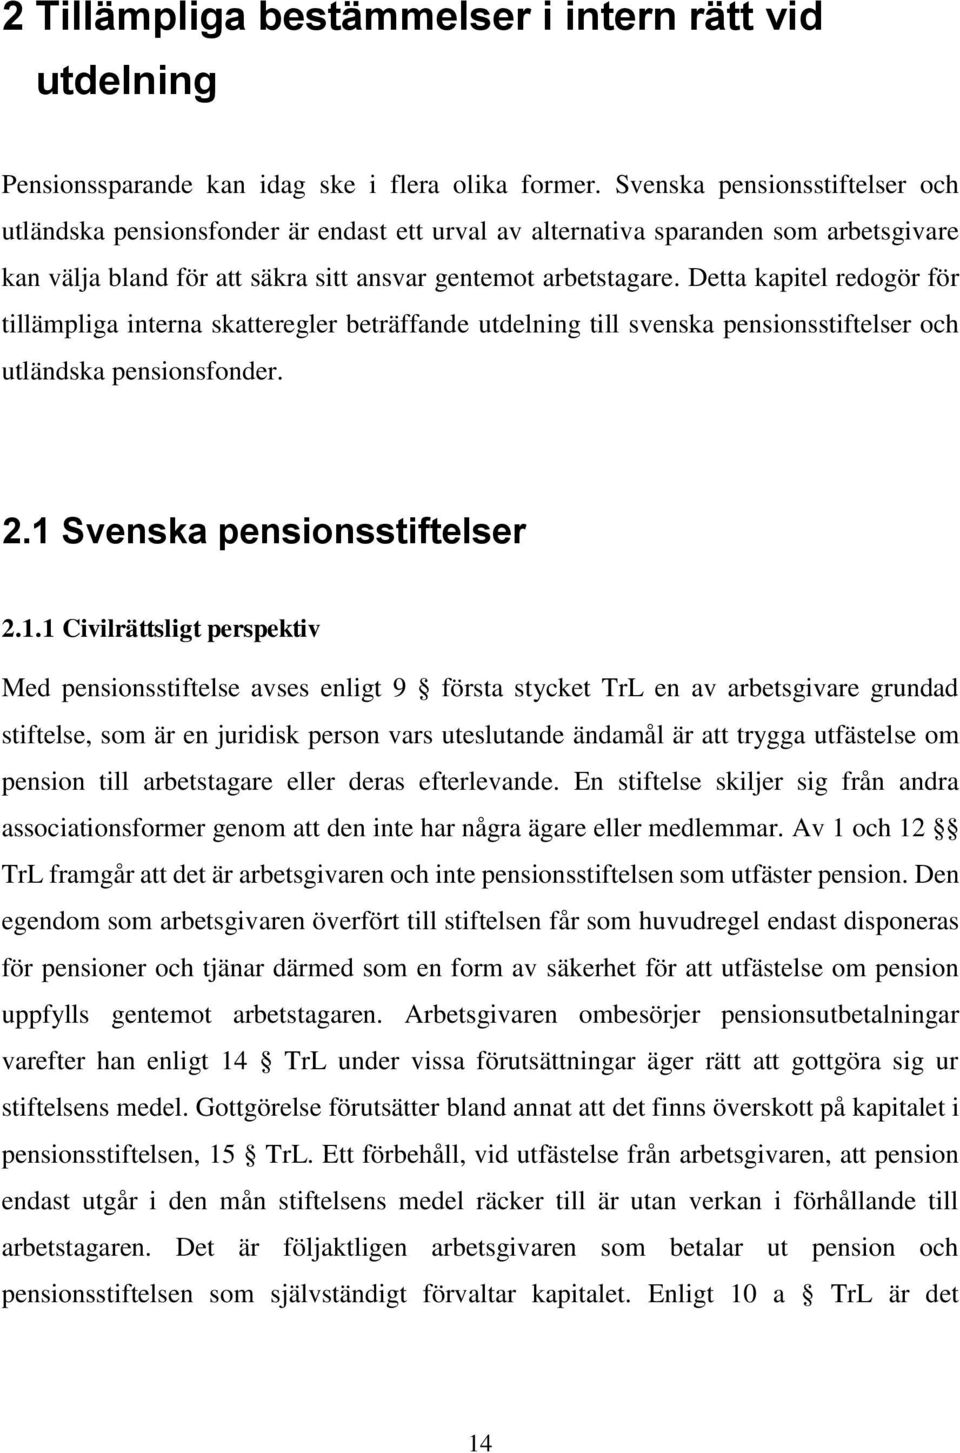 Detta kapitel redogör för tillämpliga interna skatteregler beträffande utdelning till svenska pensionsstiftelser och utländska pensionsfonder. 2.1 